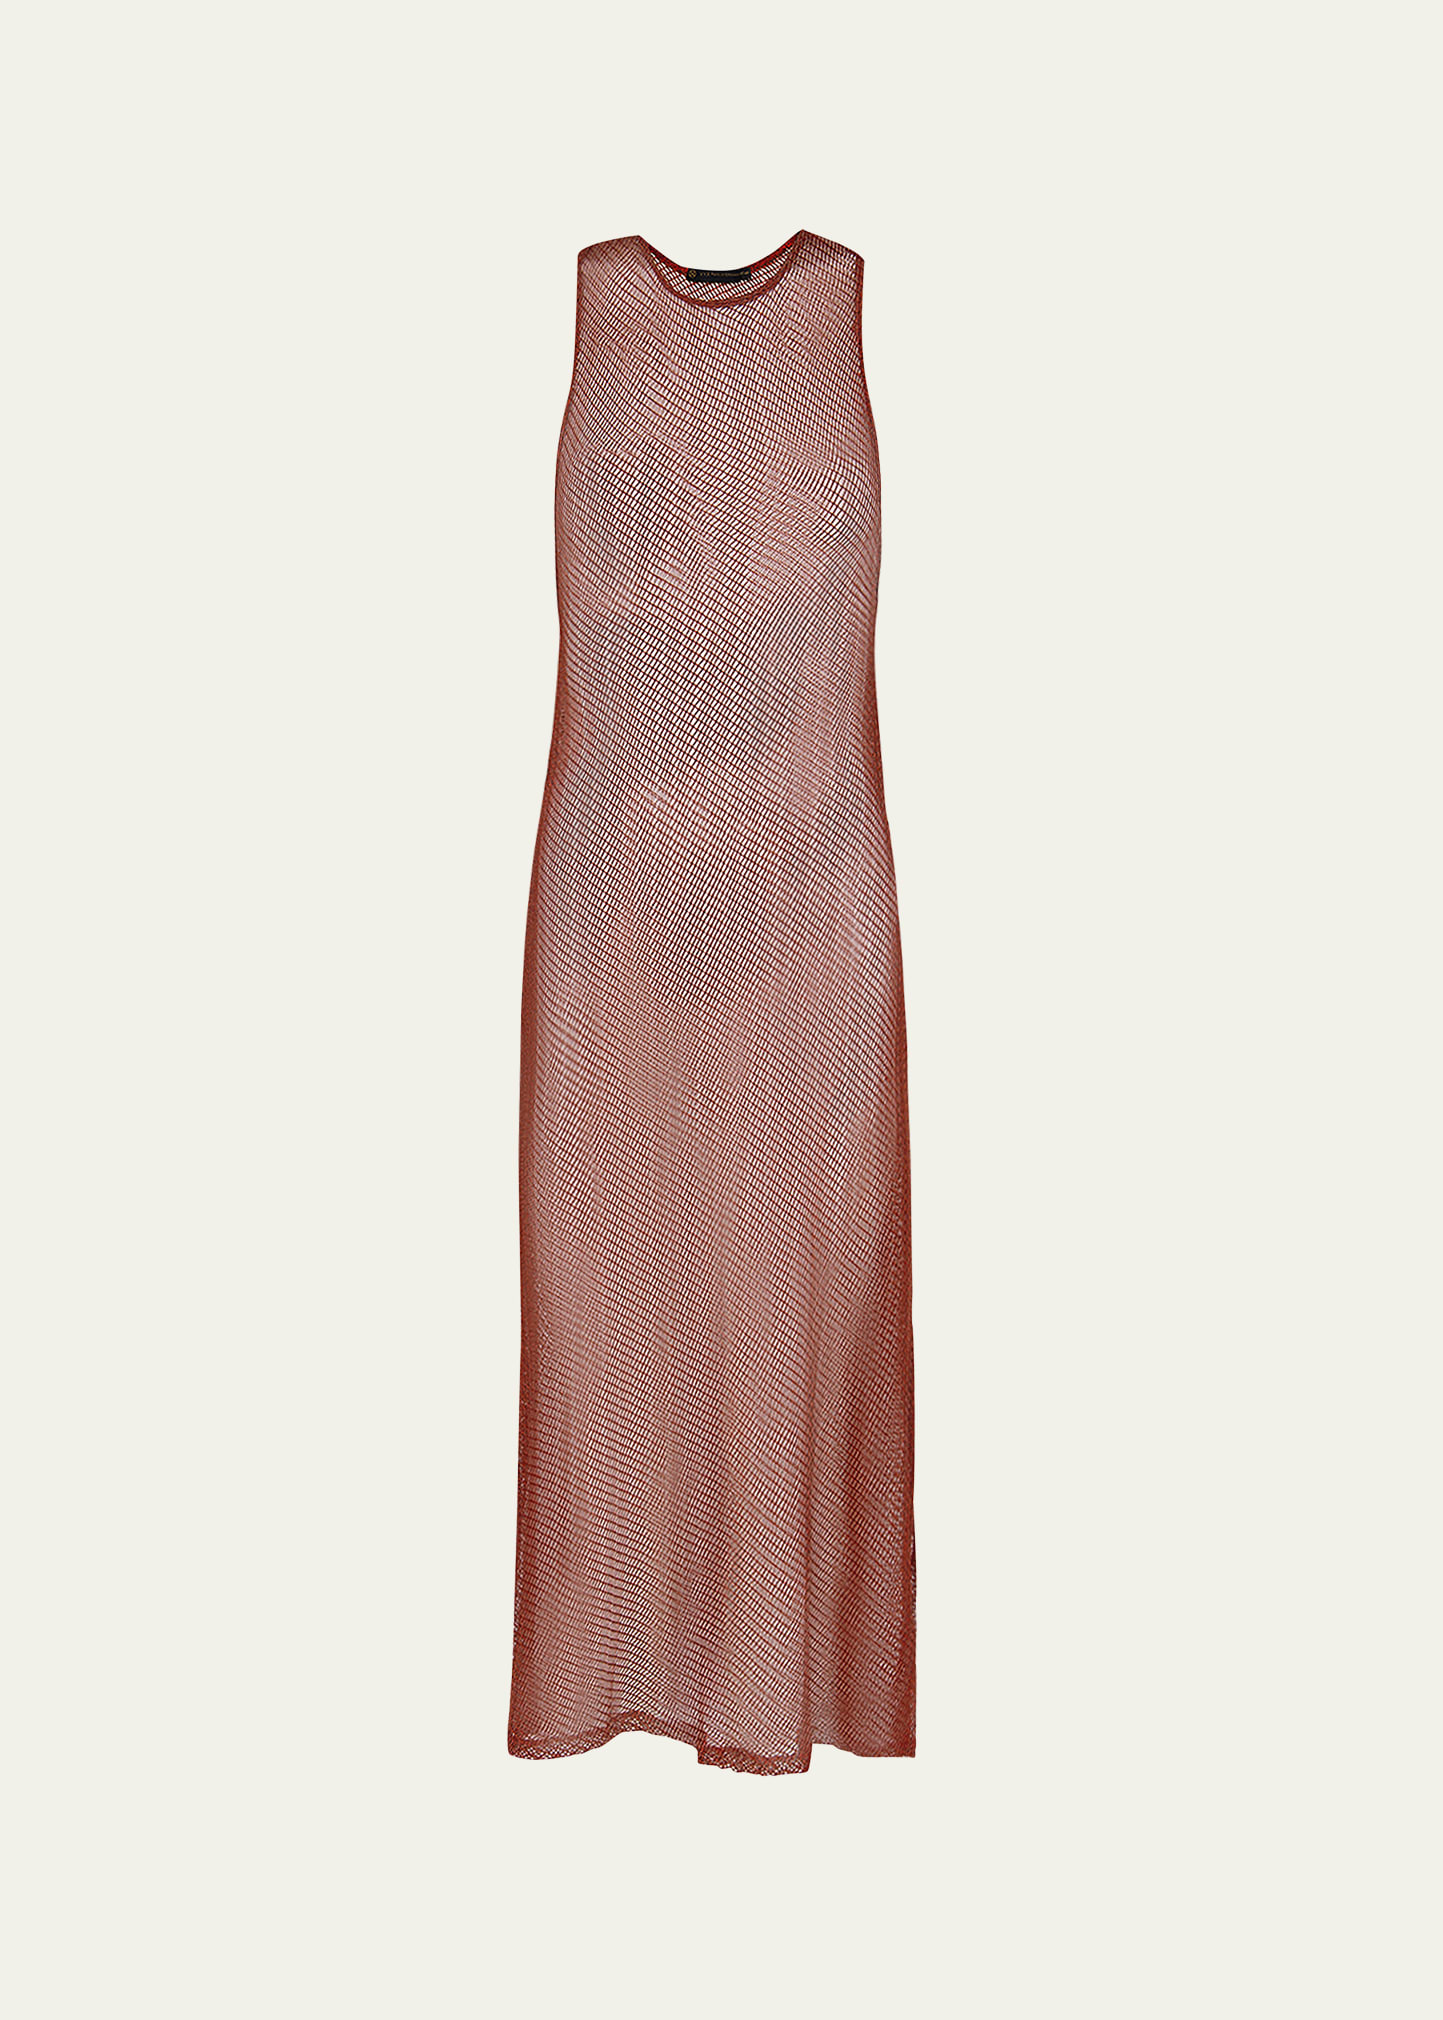 Vix Solid Twist Knit Maxi Dress Coverup In Brick